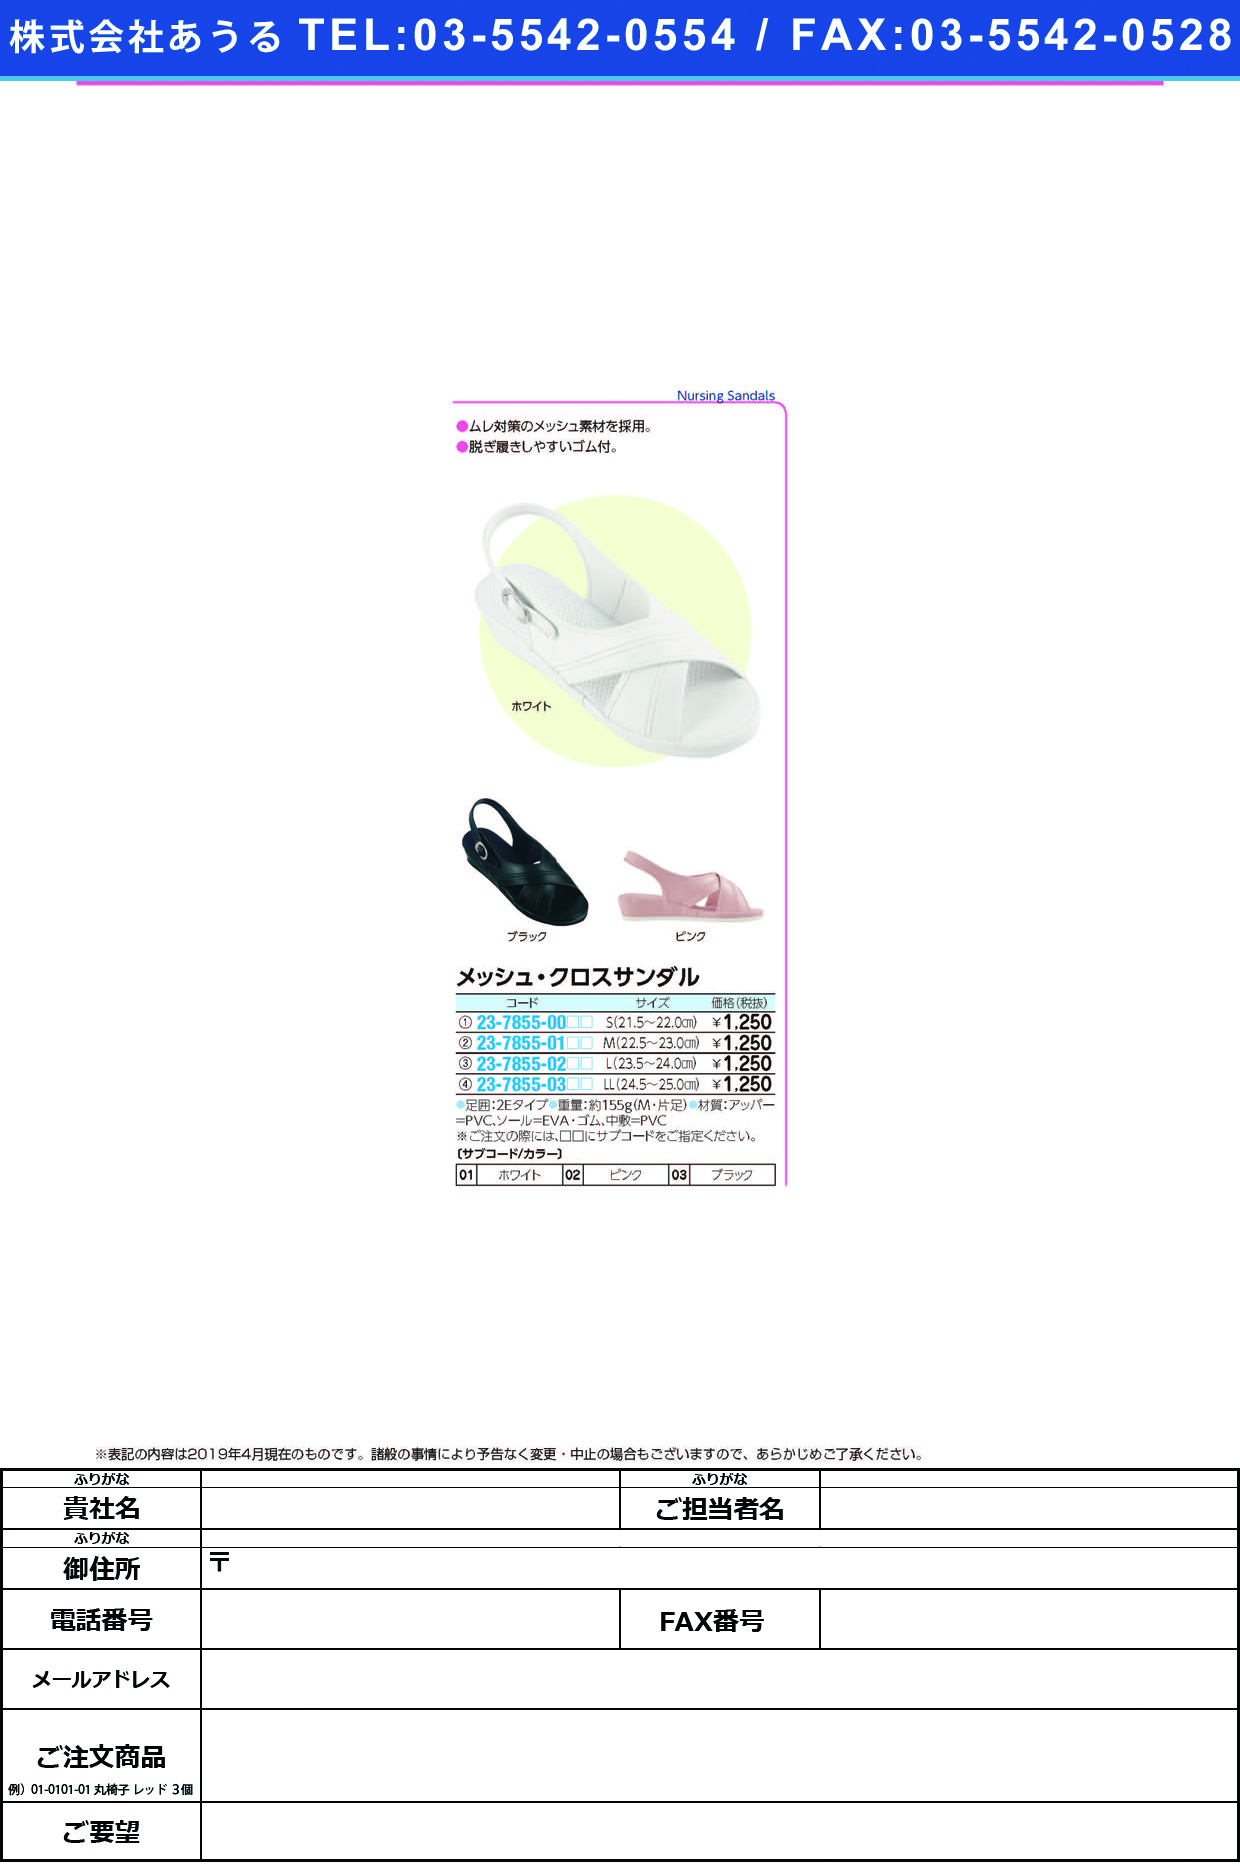 (23-7855-01)メッシュ・クロスサンダル M(22.5-23.0CM) ﾒｯｼｭｸﾛｽｻﾝﾀﾞﾙ ホワイト(ファーストレイト)【1足単位】【2019年カタログ商品】